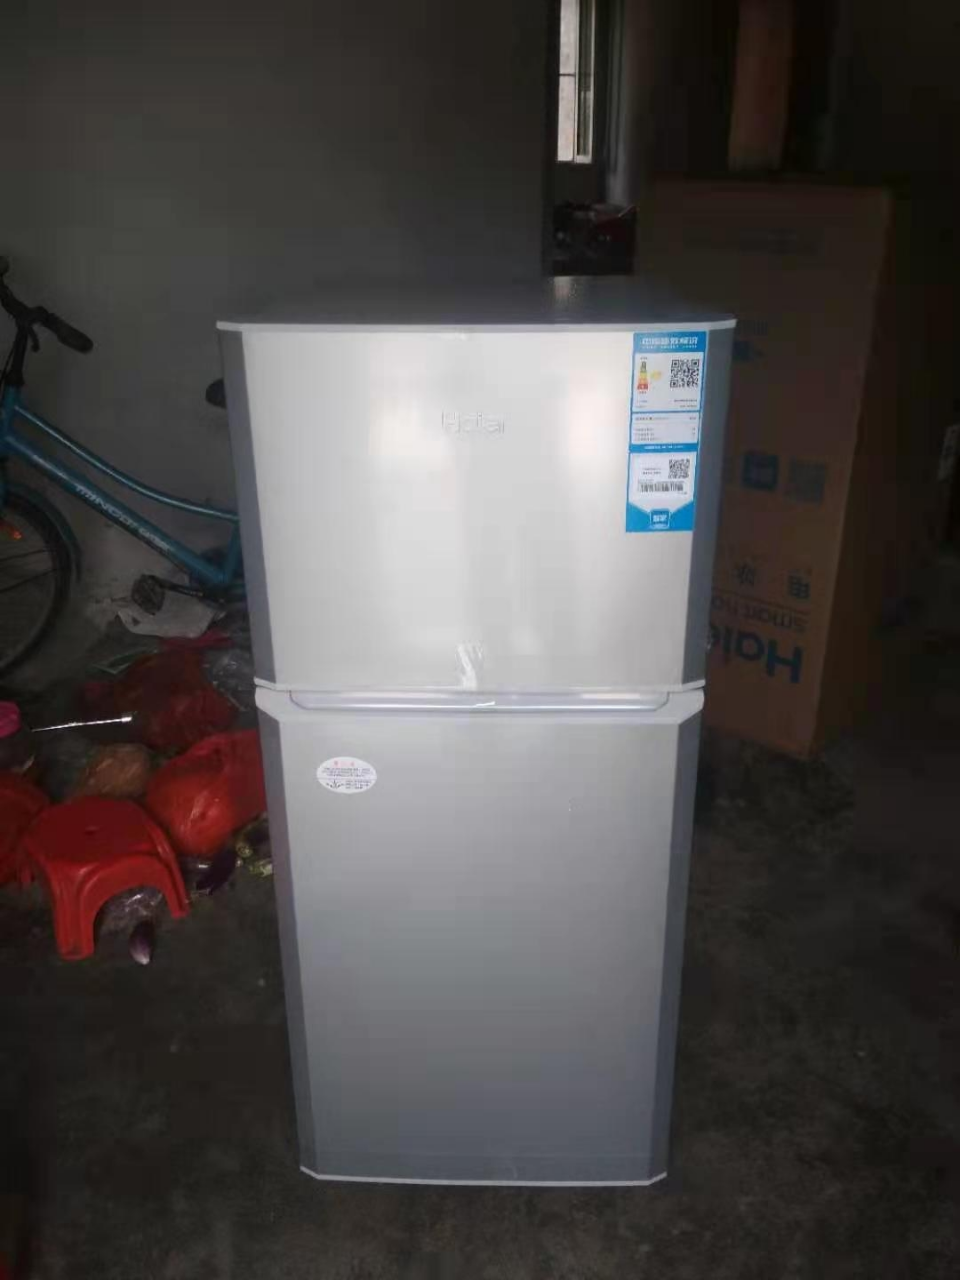 Haier/海尔 家用小冰箱租房118升小型双门冰箱宿舍家用直冷节能冷藏冷冻电冰箱BCD-118TMPA晒单图